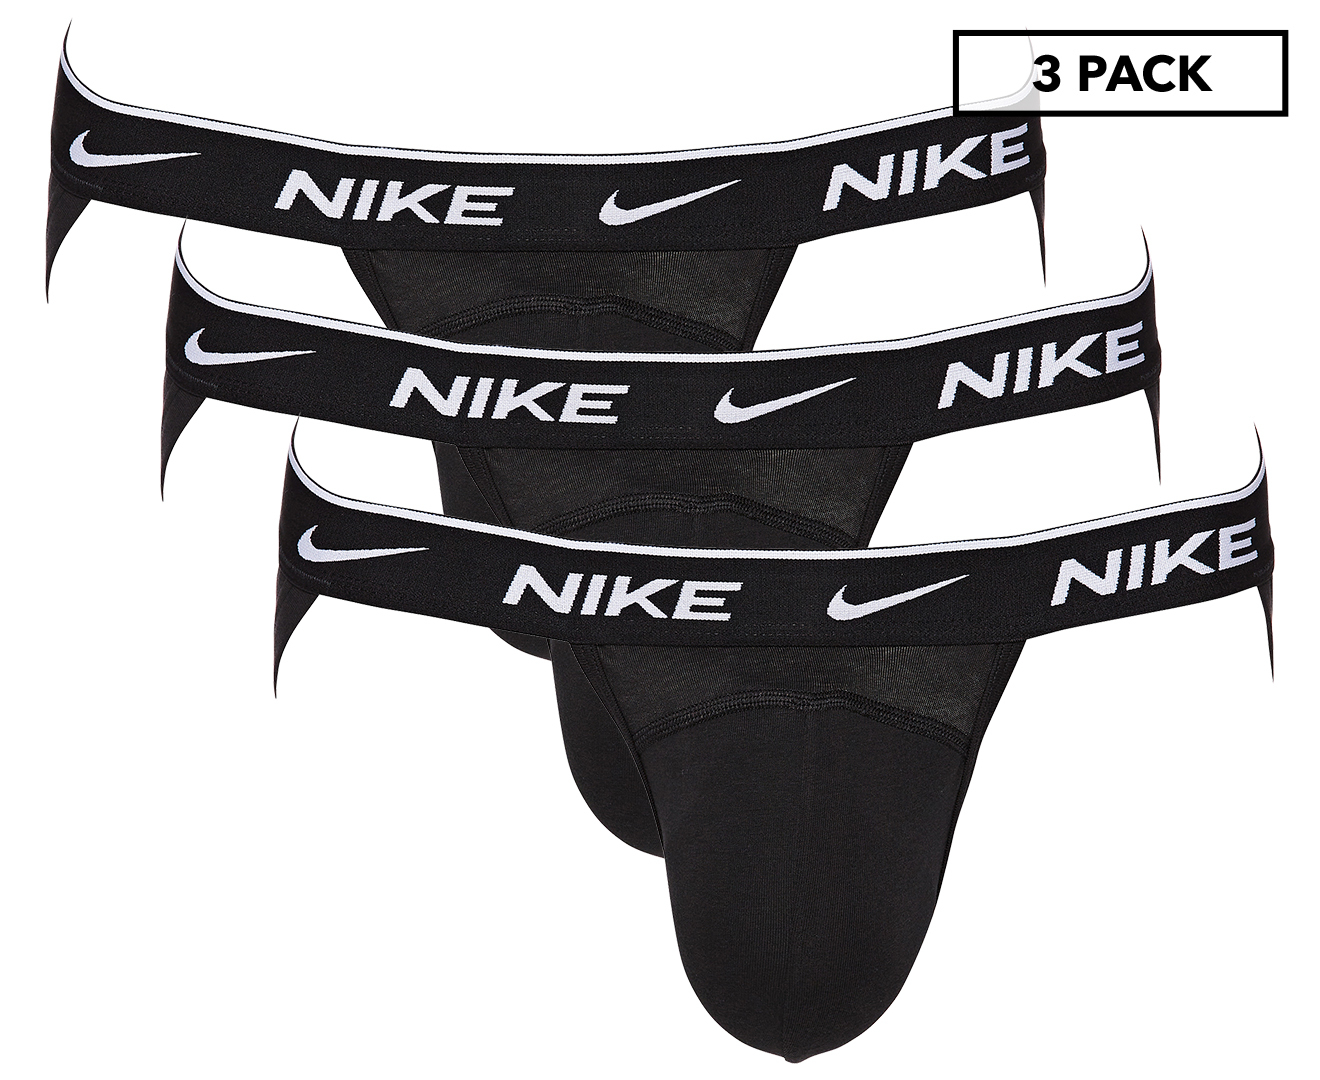 Nike Men's Dri-FIT Essential Cotton Stretch Jock Strap 3-Pack - Black ...